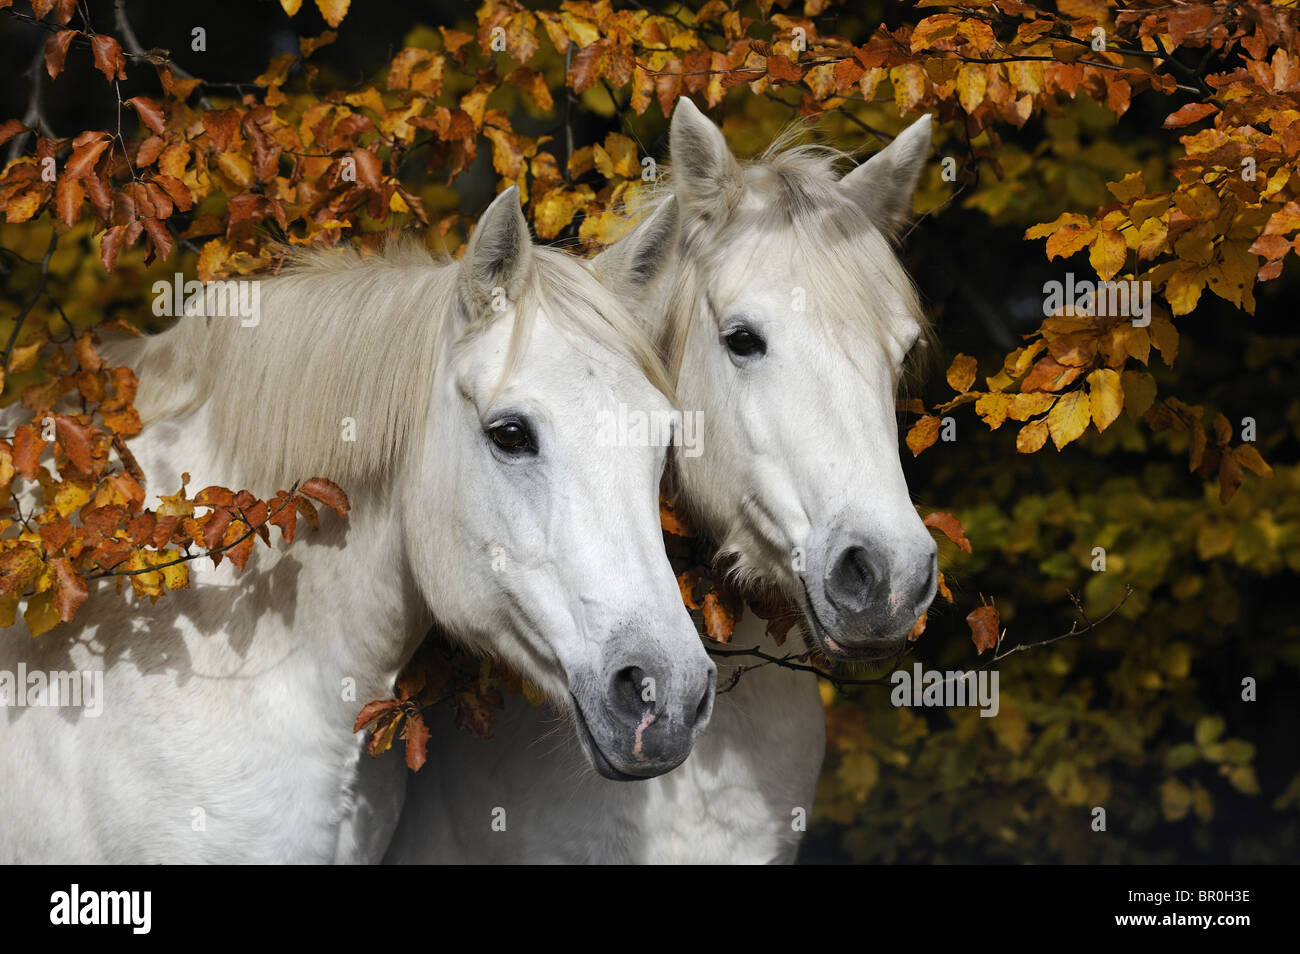 Connemara Pony (Equus ferus caballus). Retrato de dos yeguas gris en otoño. Foto de stock